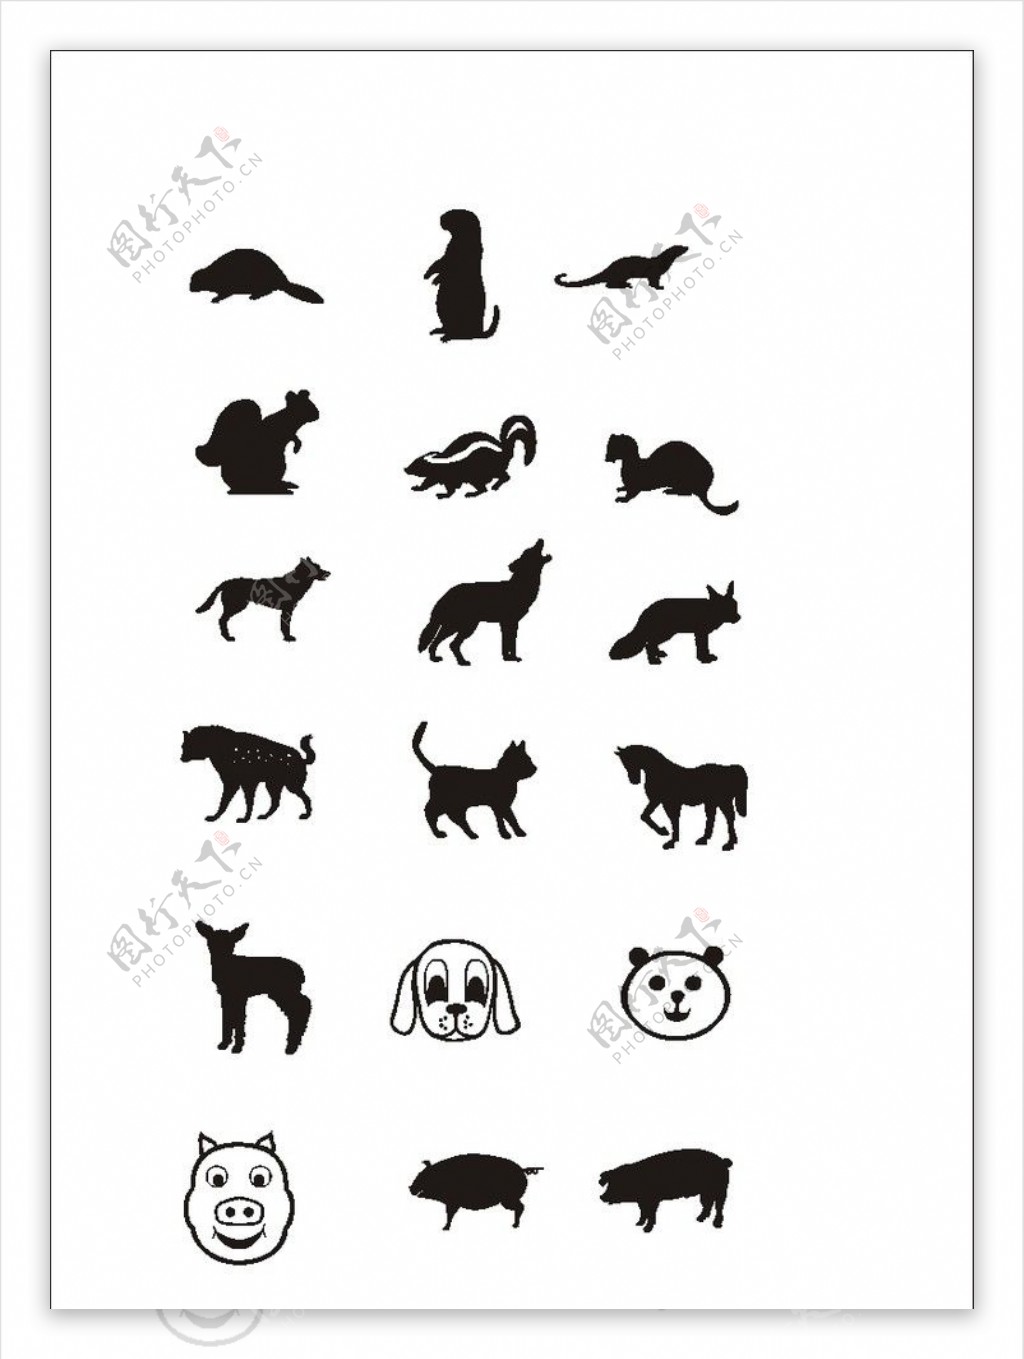 图片素材 : 野生动物, 哺乳动物, 动物群, 红熊猫, 脊椎动物, pro科 4000x3000 - - 95595 - 素材中国, 高清 ...